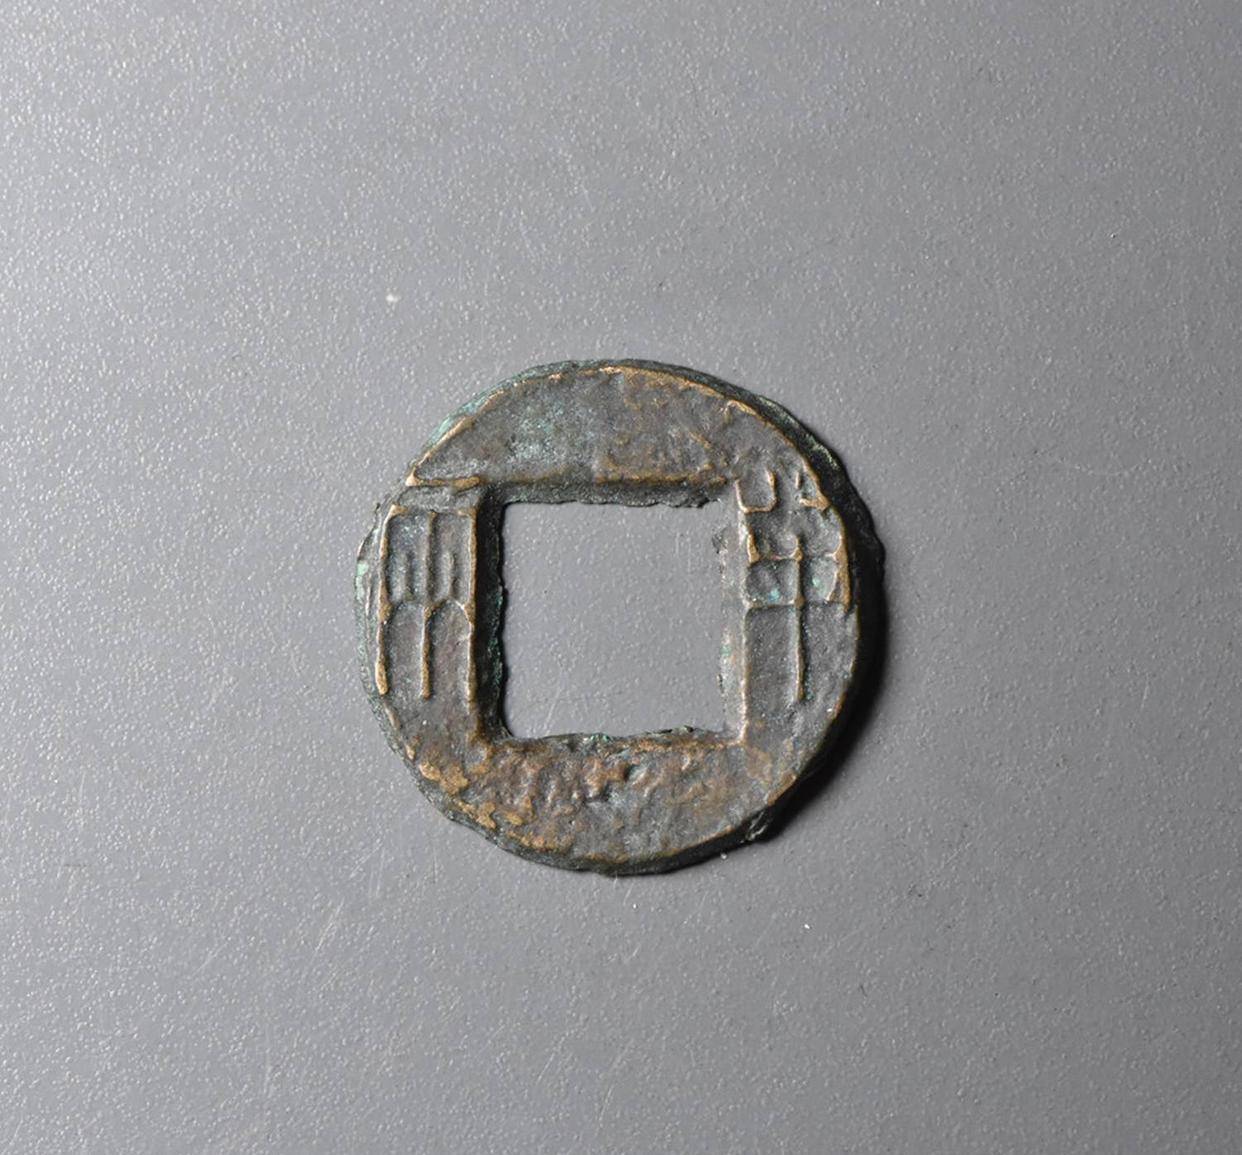 汉朝铜钱图片及价格表图片